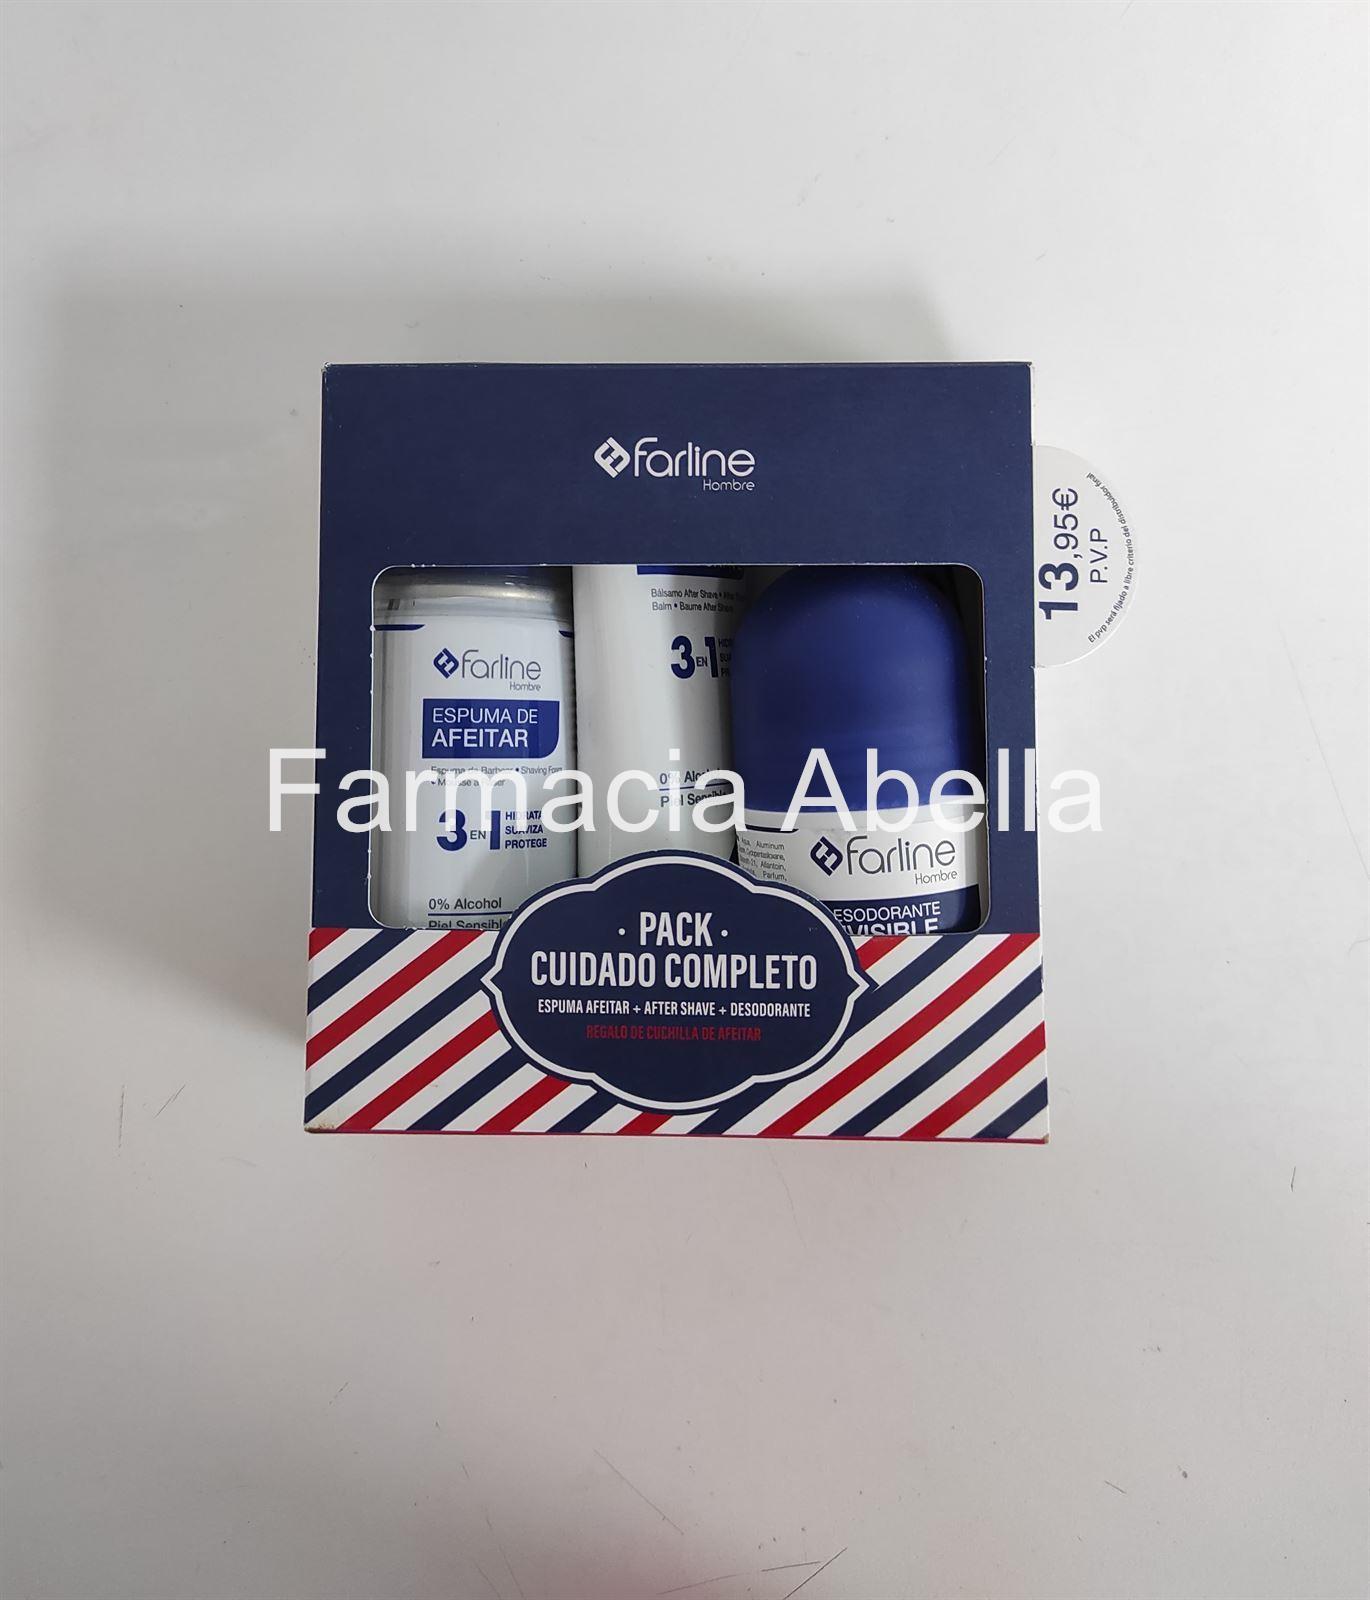 Farline Pack cuidado completo (Espuma de afeitar, after shave y desodorante) - Imagen 1